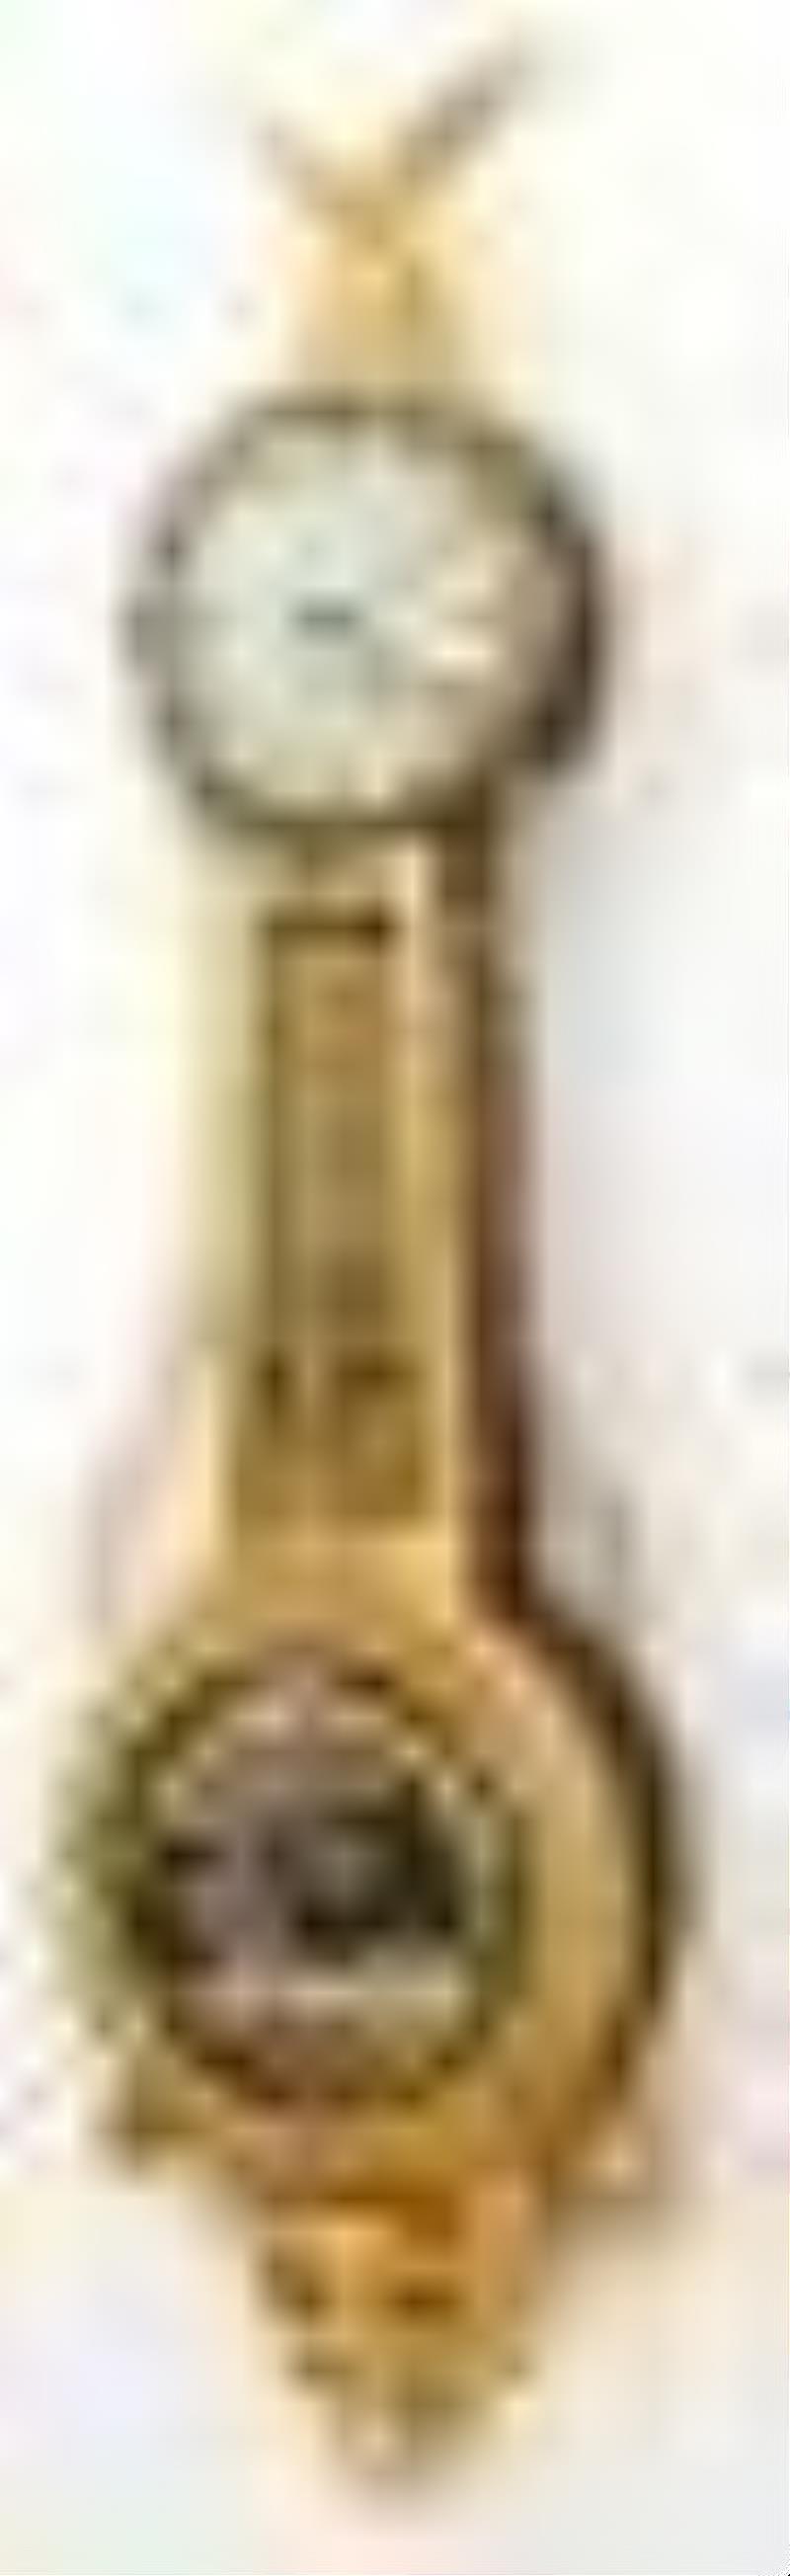 Elmer O. Stennes Girandole Banjo Clock, Pembroke, Massachusetts